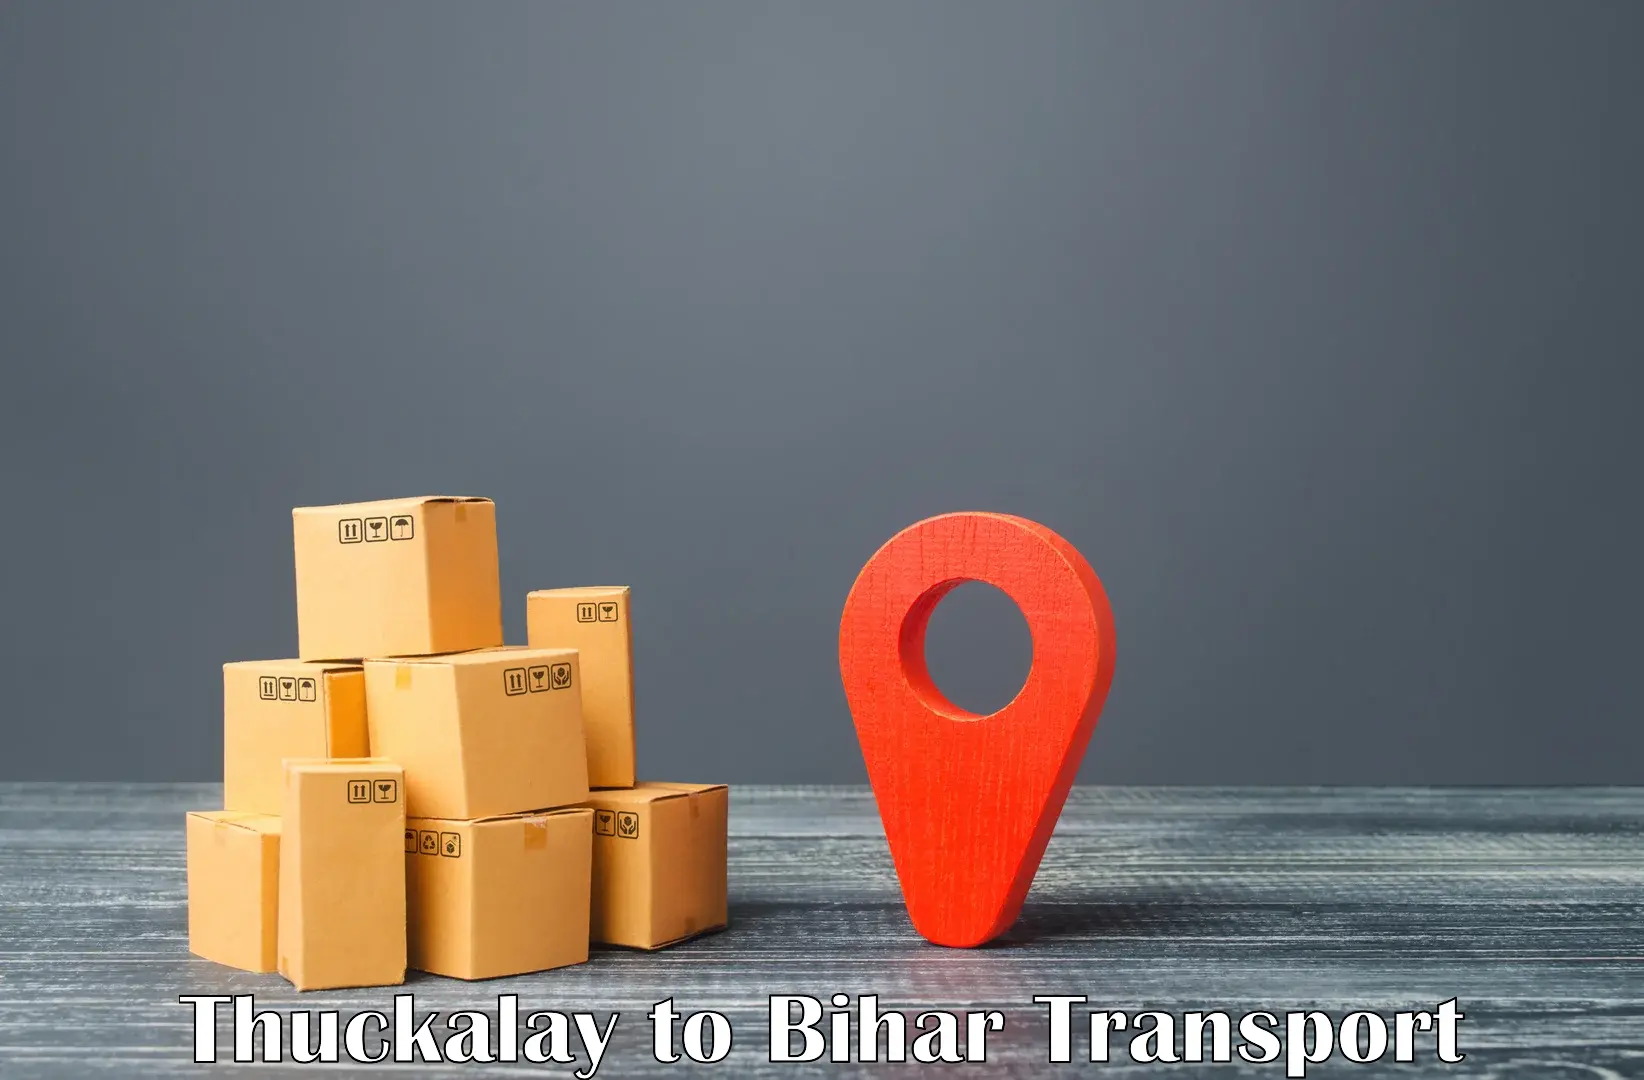 Transport services Thuckalay to Bankipore